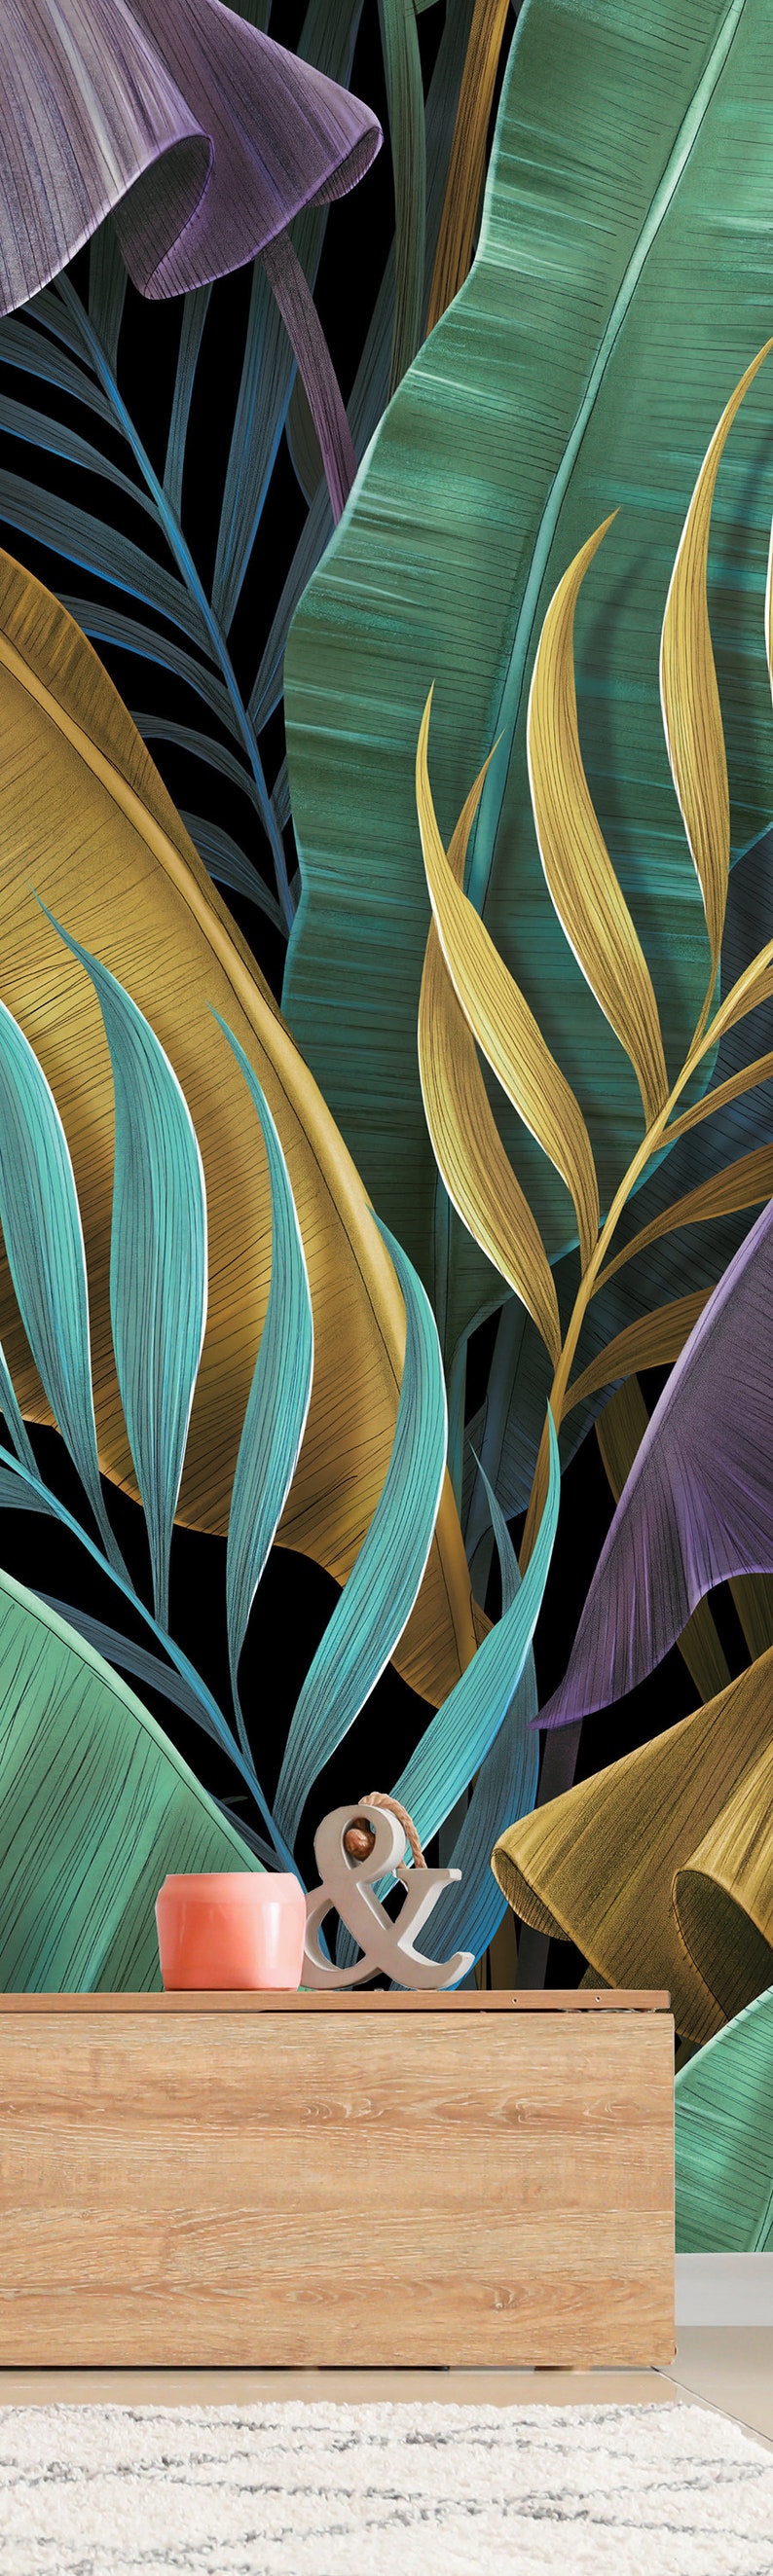 Papier peint exotique tropical, feuilles de bananier colorées pastel, palmier, peinture murale à peau et bâton, auto-adhésif, décoration murale tropicale image 3